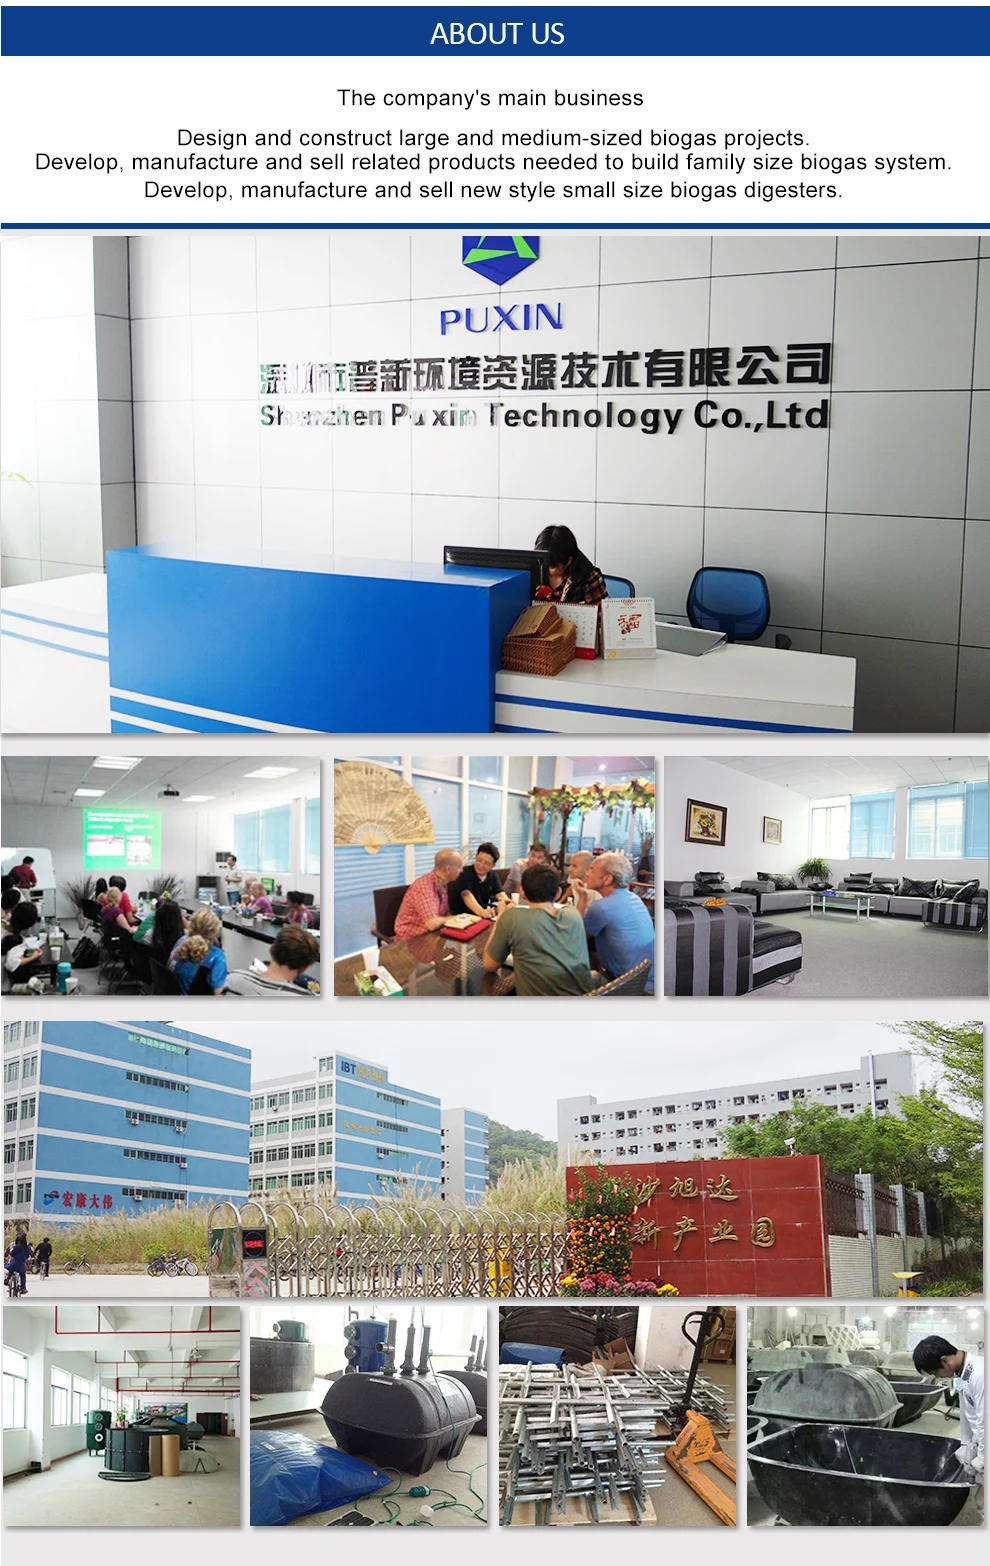 Китай бренда Puxin размер семьи небольшой очистных сооружений в биогаза Оптовая продажа, изготовление, производство